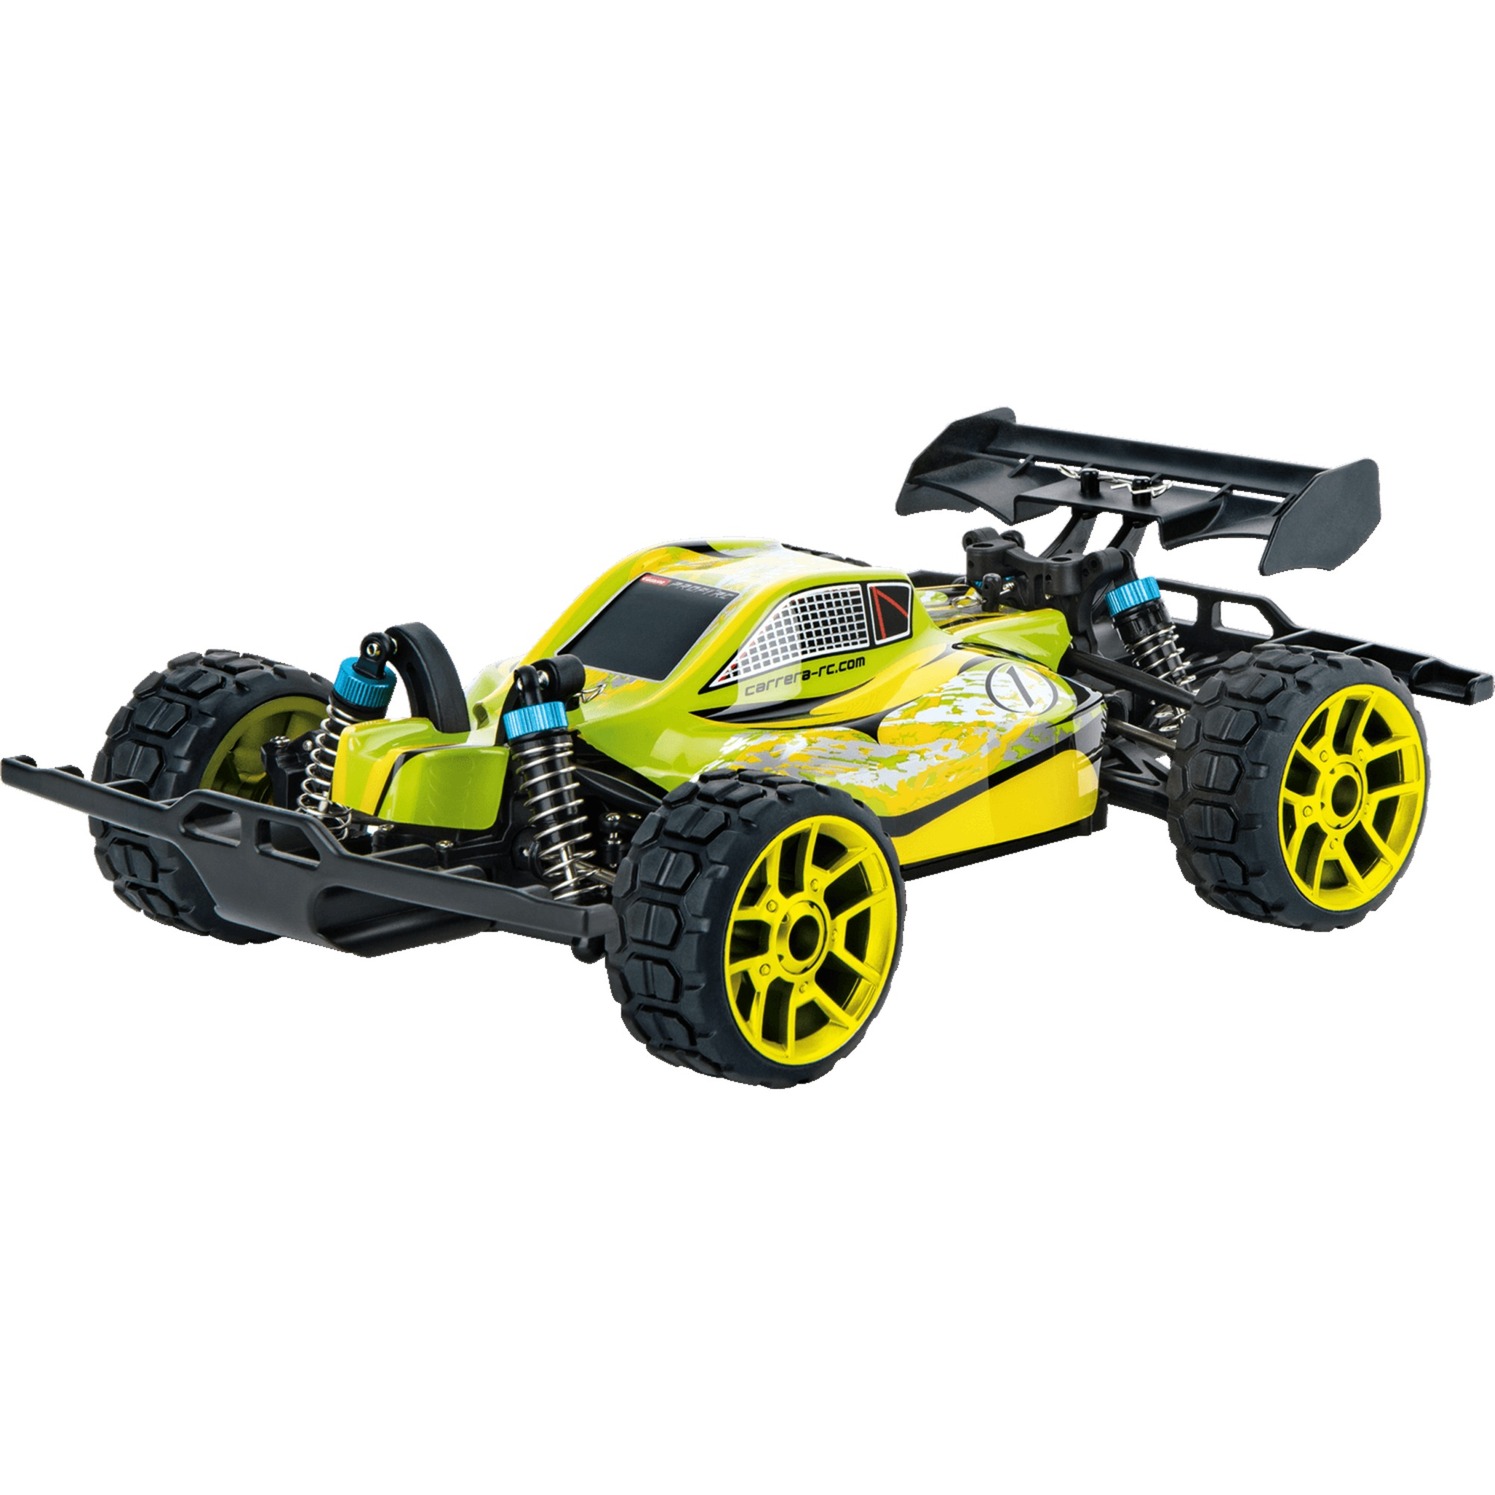 Spielzeug: Carrera Profi RC Lime Star -PX-